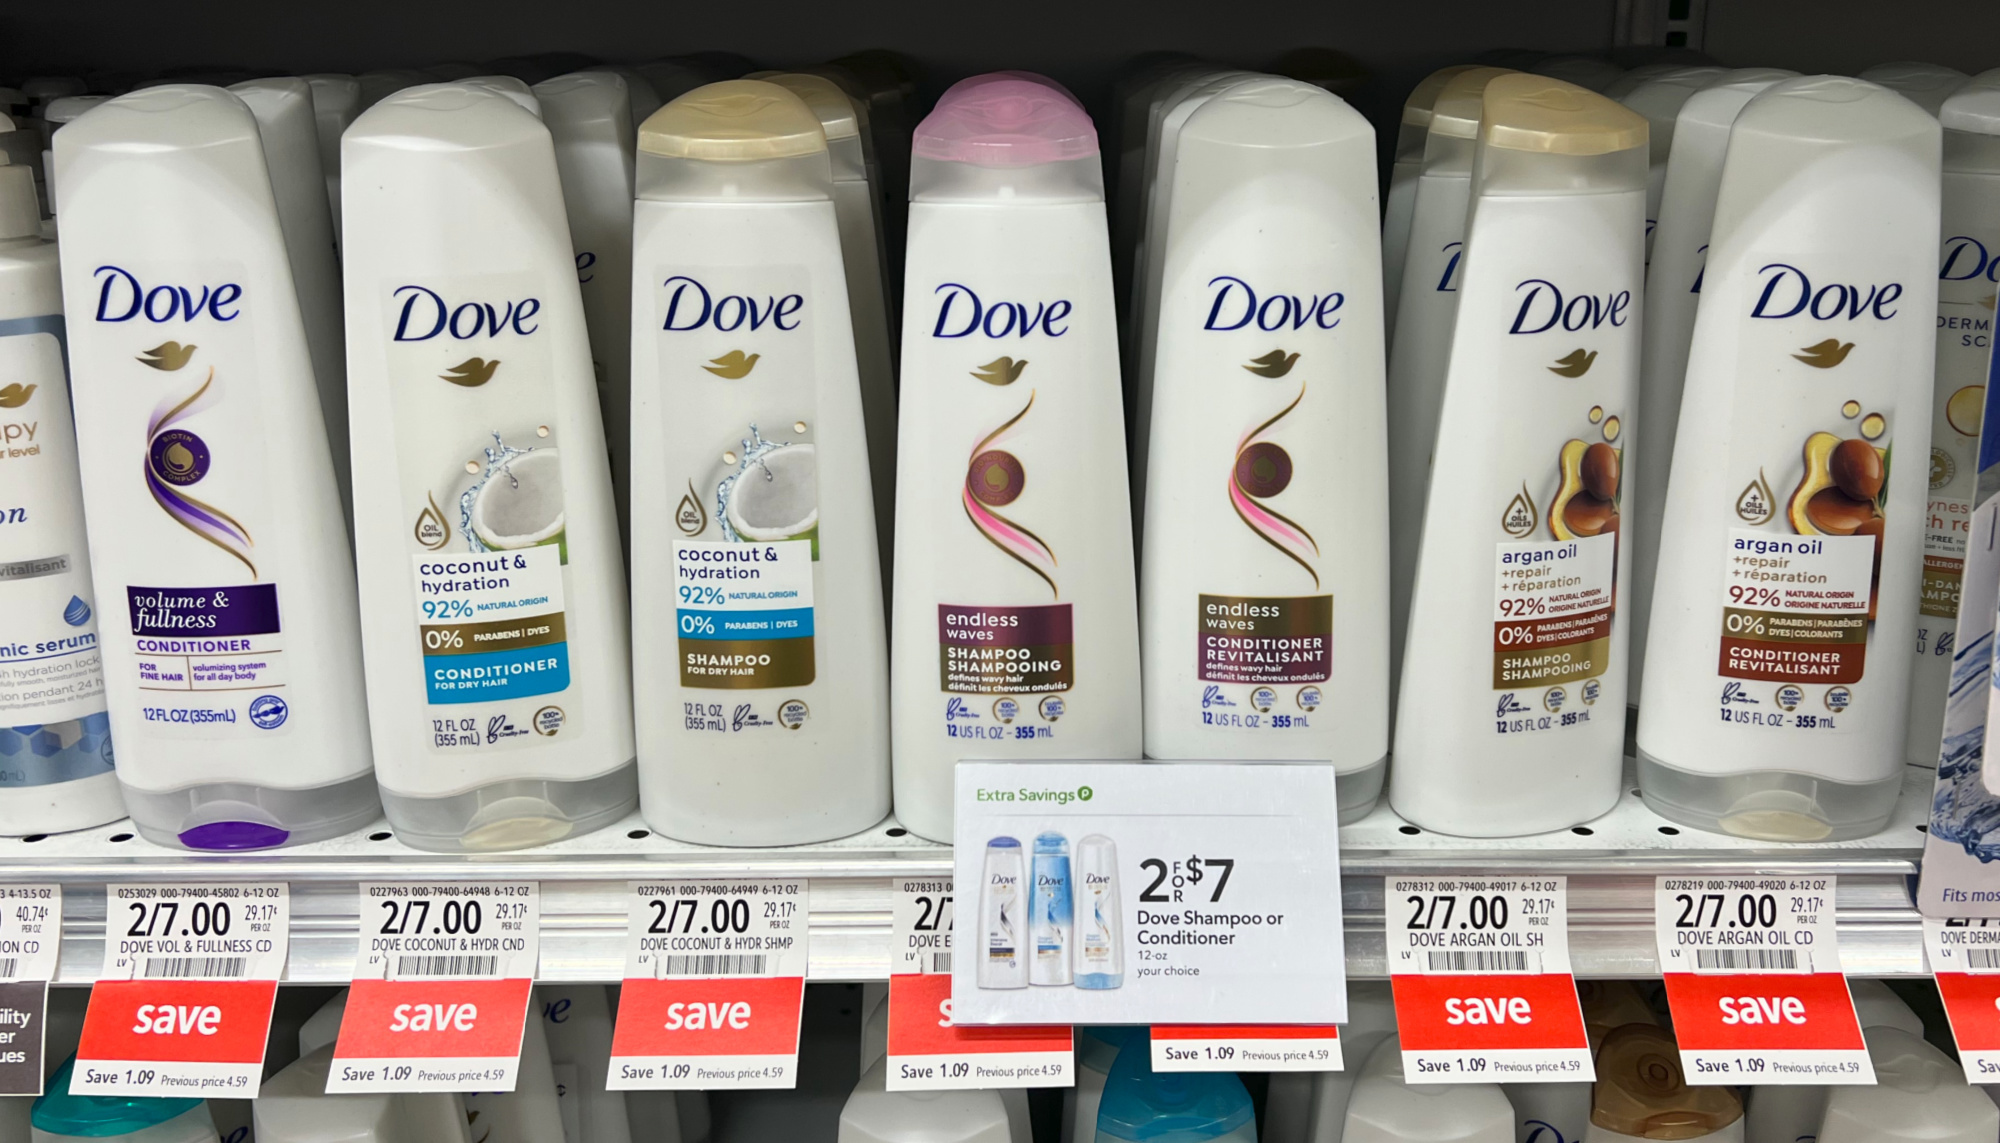 Dove Men+Care Bar Soap 2pk $1 at Publix - My Publix Coupon Buddy